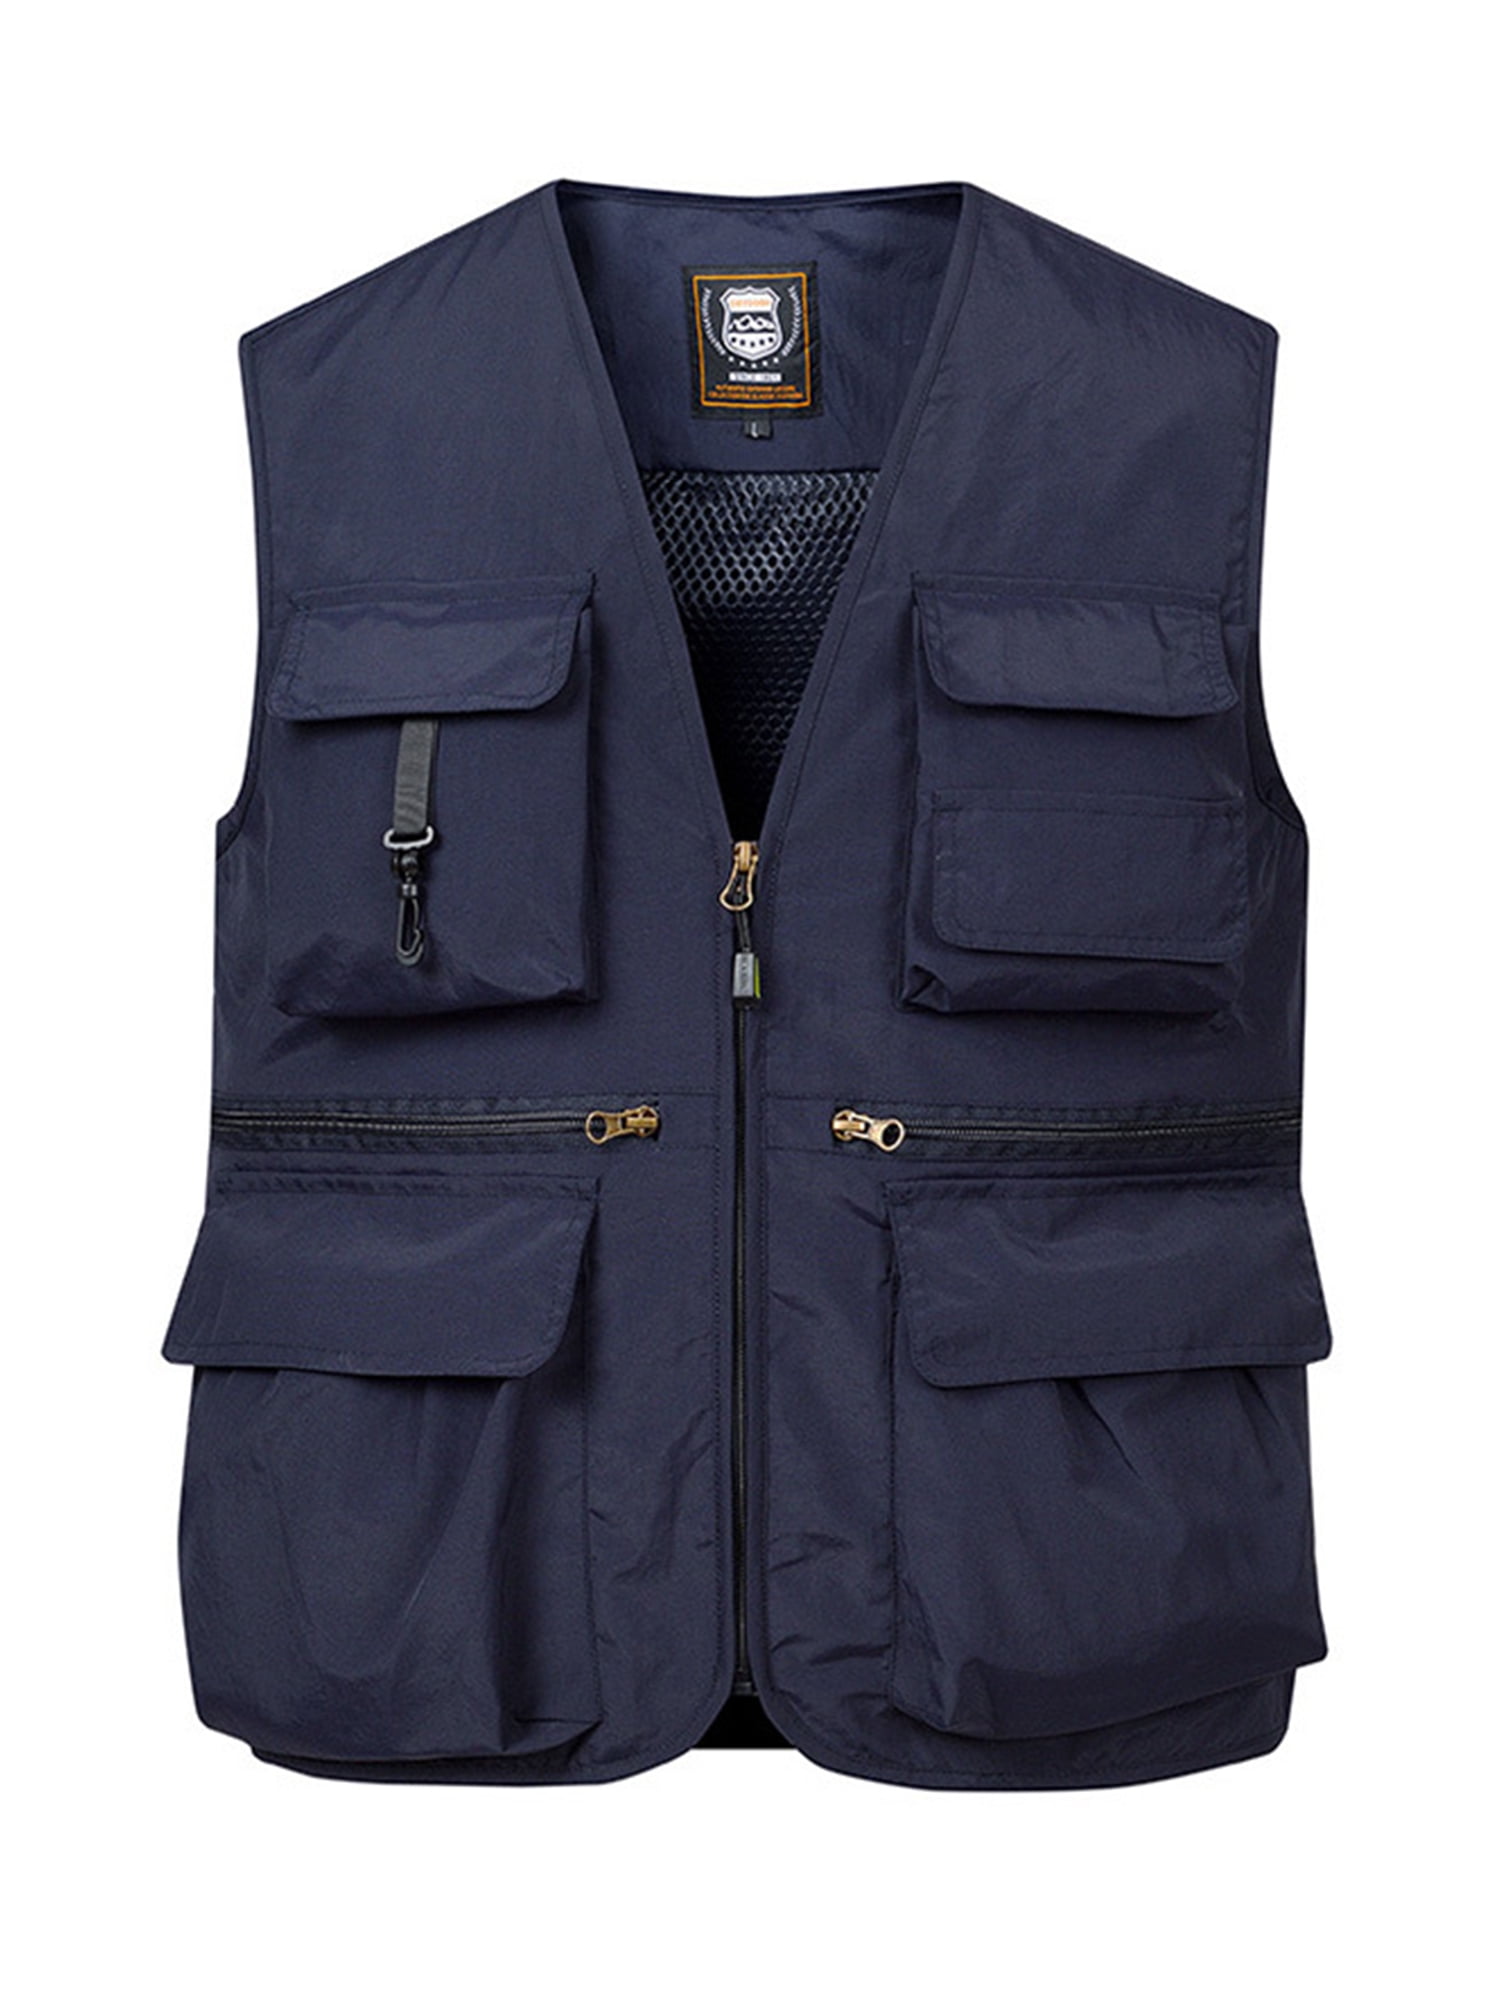 Frontwalk Mens Cargo Vest With Multi-Pockets Vests Jacket